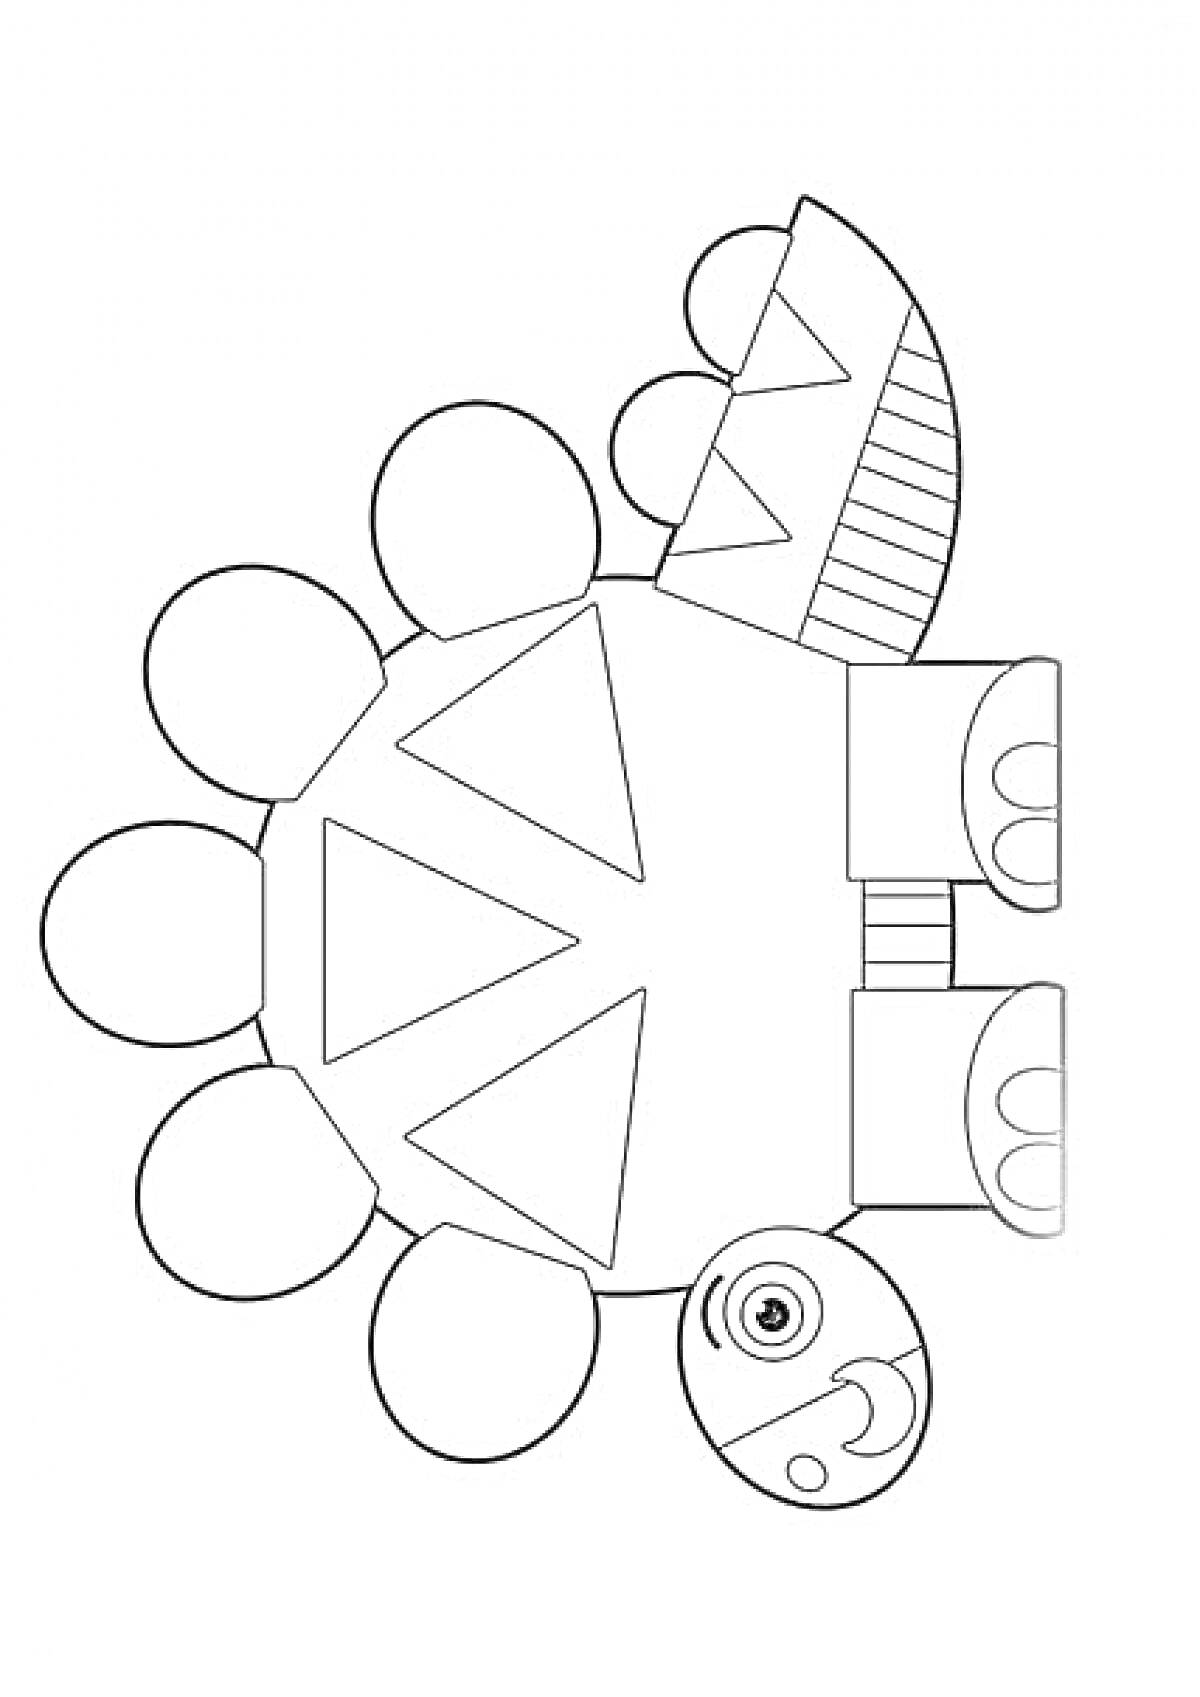 Черепаха с кругами, треугольниками и прямоугольниками